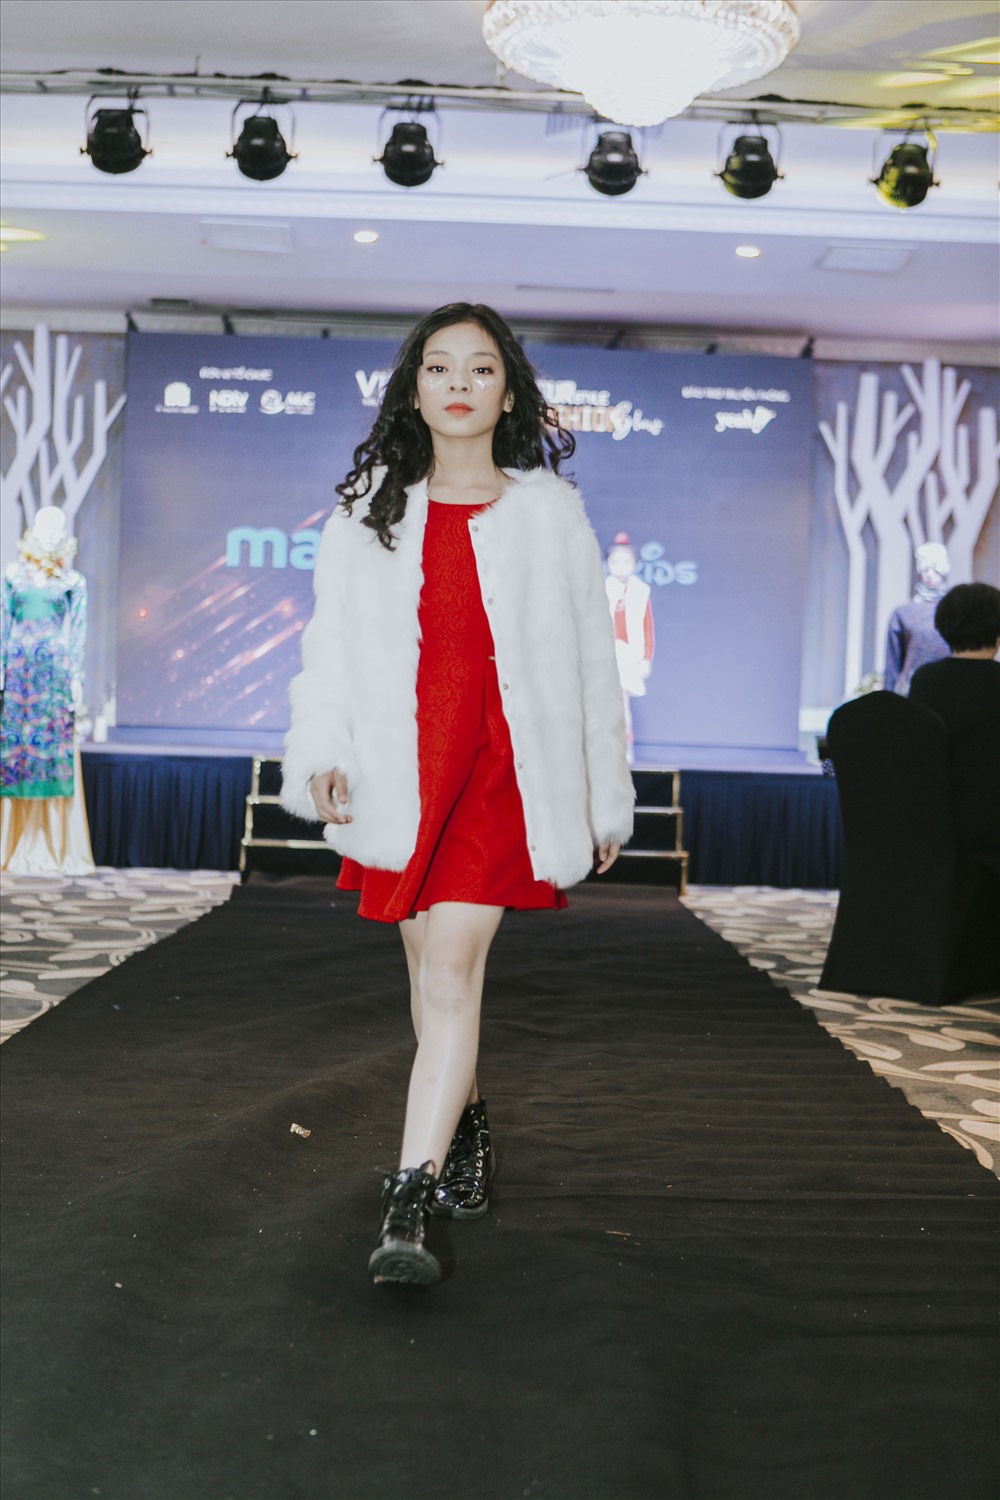 Tuần lễ thời trang trẻ em quốc tế Việt Nam 2018 không chỉ là điểm hẹn đặc biệt của những người đam mê thời trang mà con là một trong những hoạt động nhân ái hướng tới những giá trị vì cộng đồng.